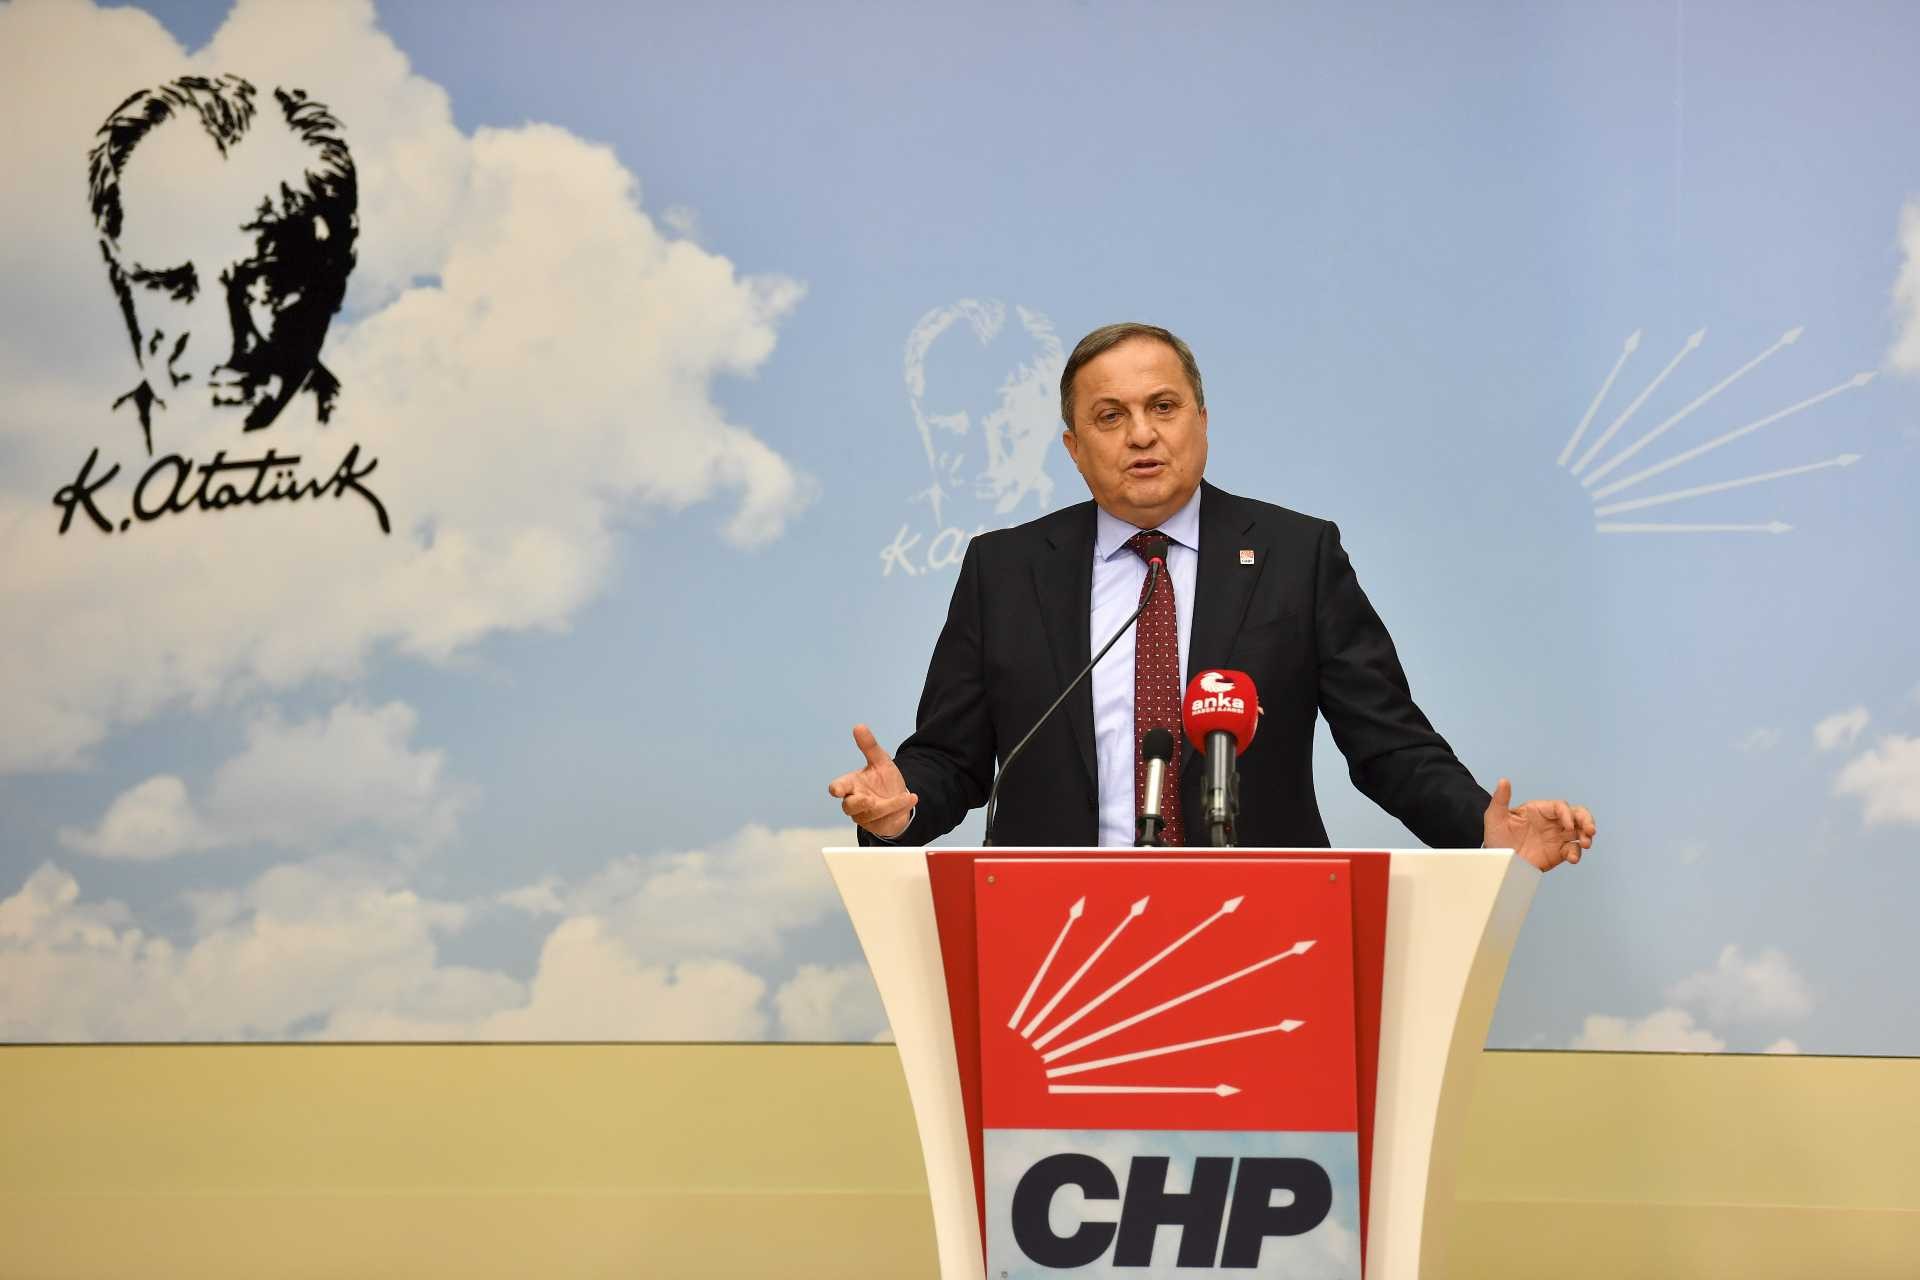 CHP'den 'Afetlerin sorumlusu sizsiniz' diyen Erdoğan'a yanıt: 'Dinozorların soyunu da CHP kuruttu' dese şaşırmayız